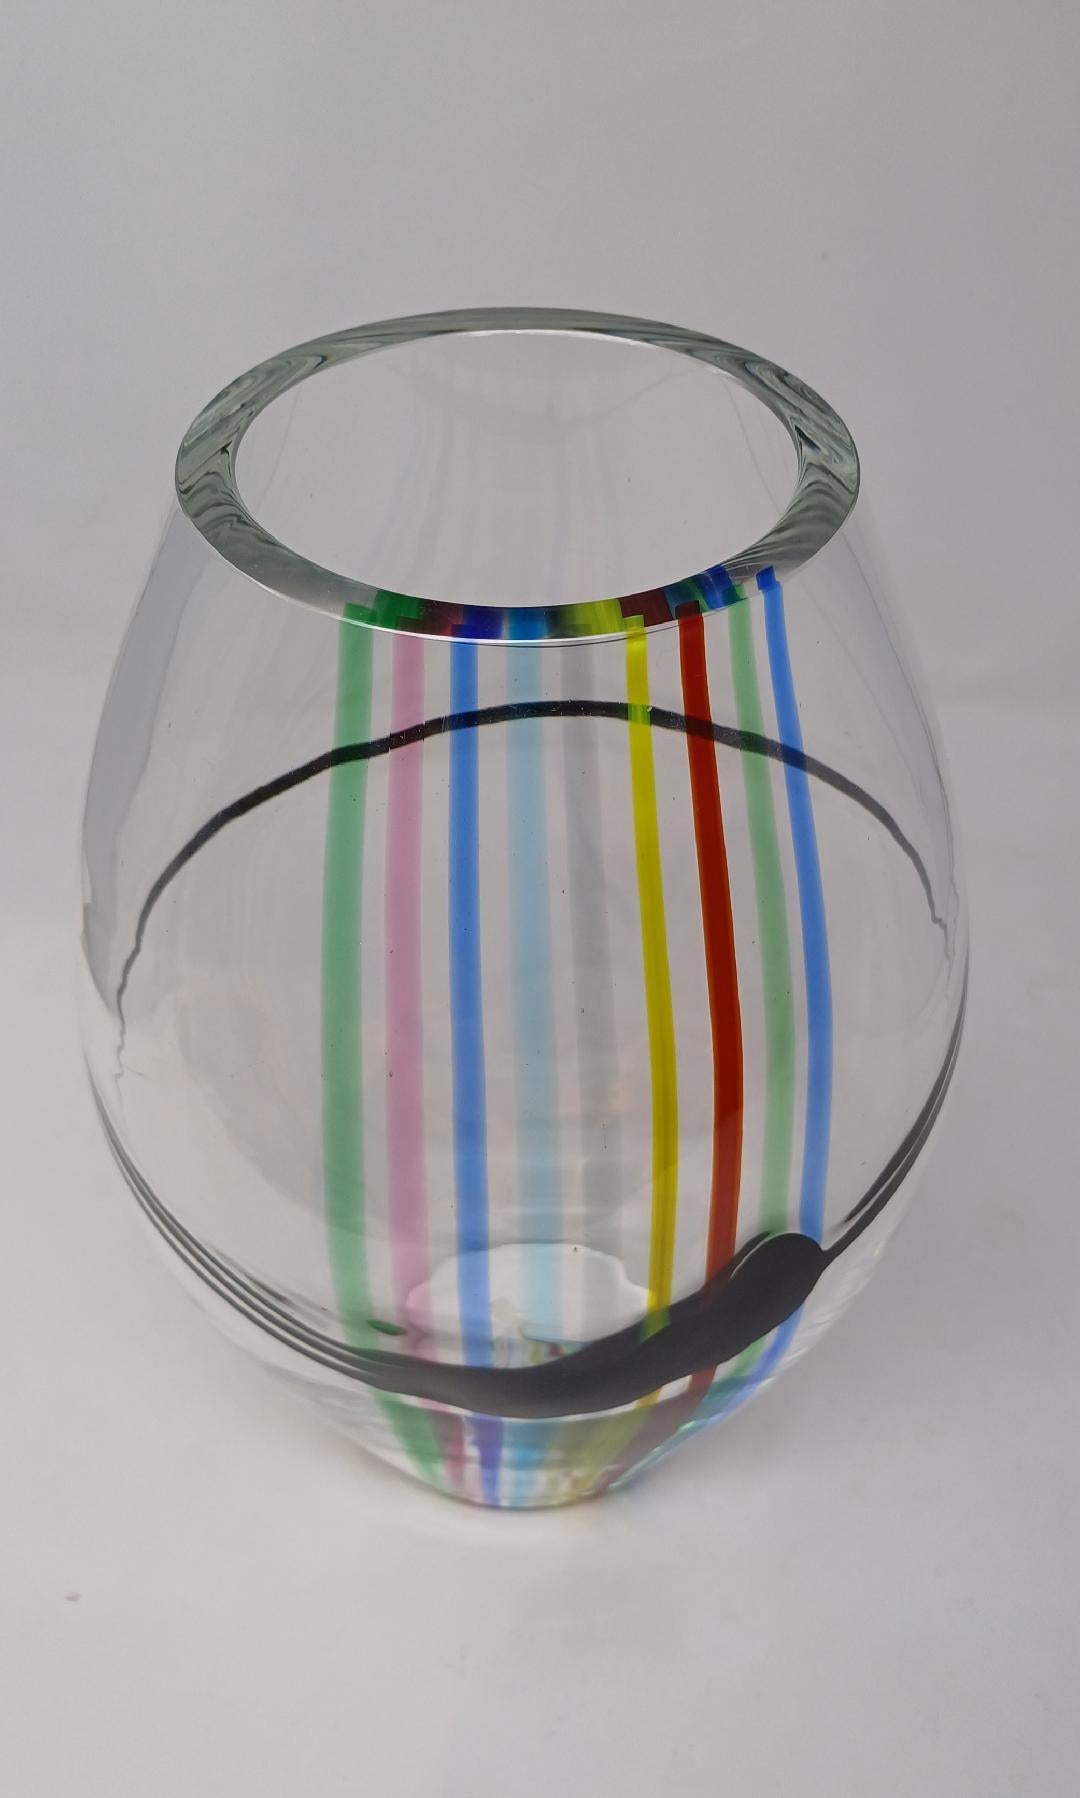  A  Vase des années 1970  avec des couleurs arc-en-ciel striées de bleu, orange, rose, rouge, jaune et vert ; le bol en verre transparent épais avec des couches de couleurs incrustées. Créé par Livio Seguso pour Seguso AV.